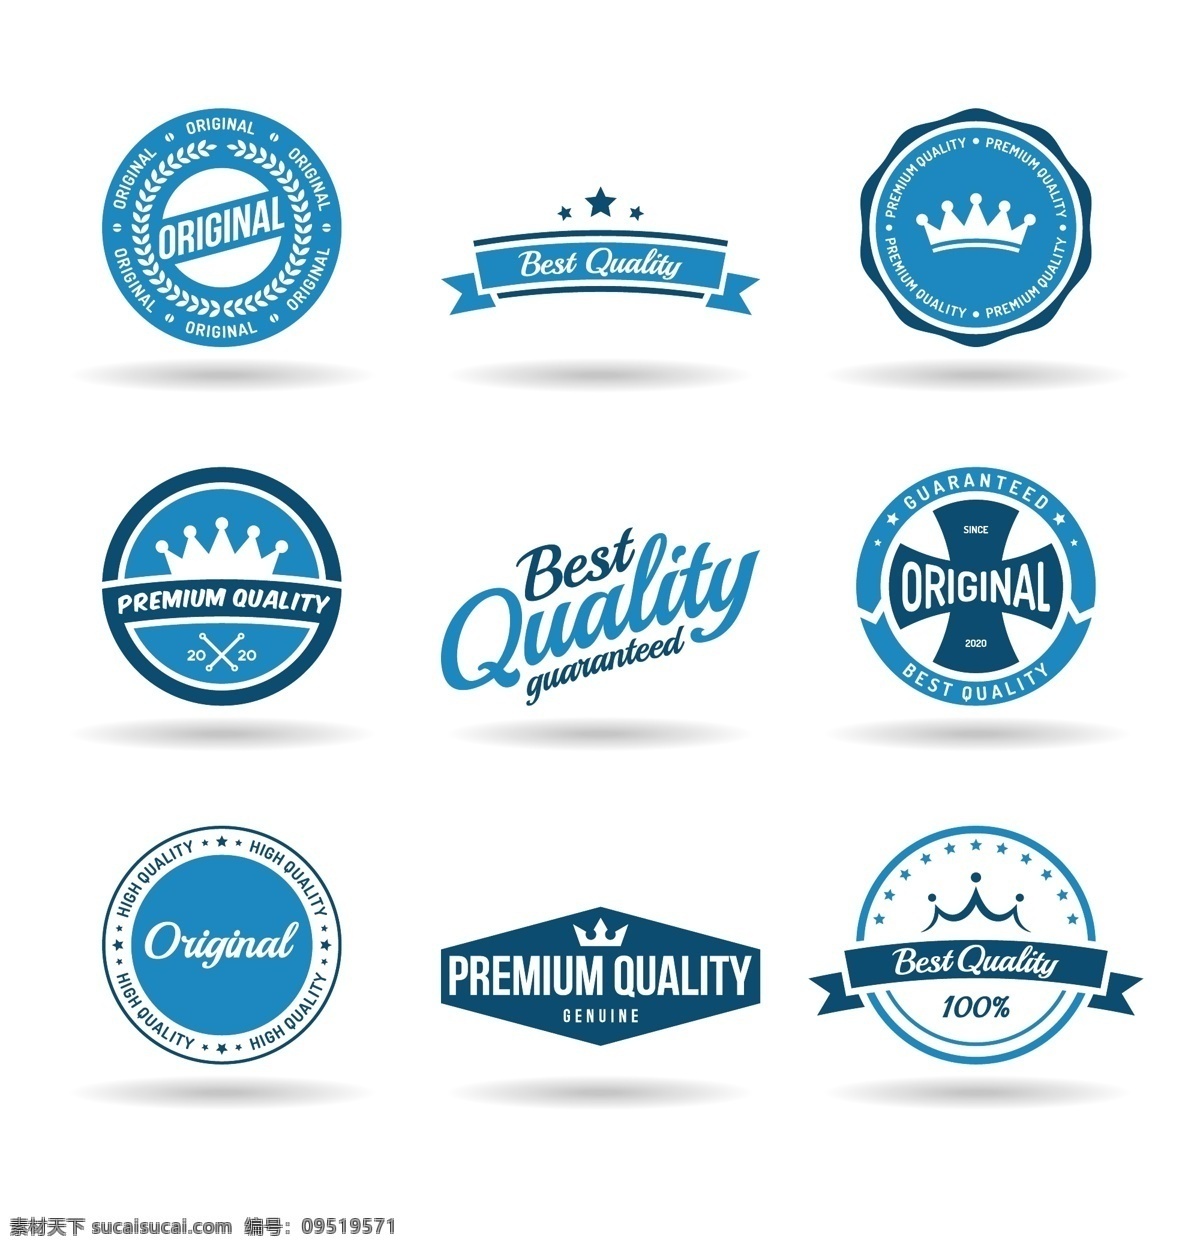 皇冠 logo logo图形 创意 标志设计 商标设计 公司logo 企业logo 标志图标 矢量素材 白色